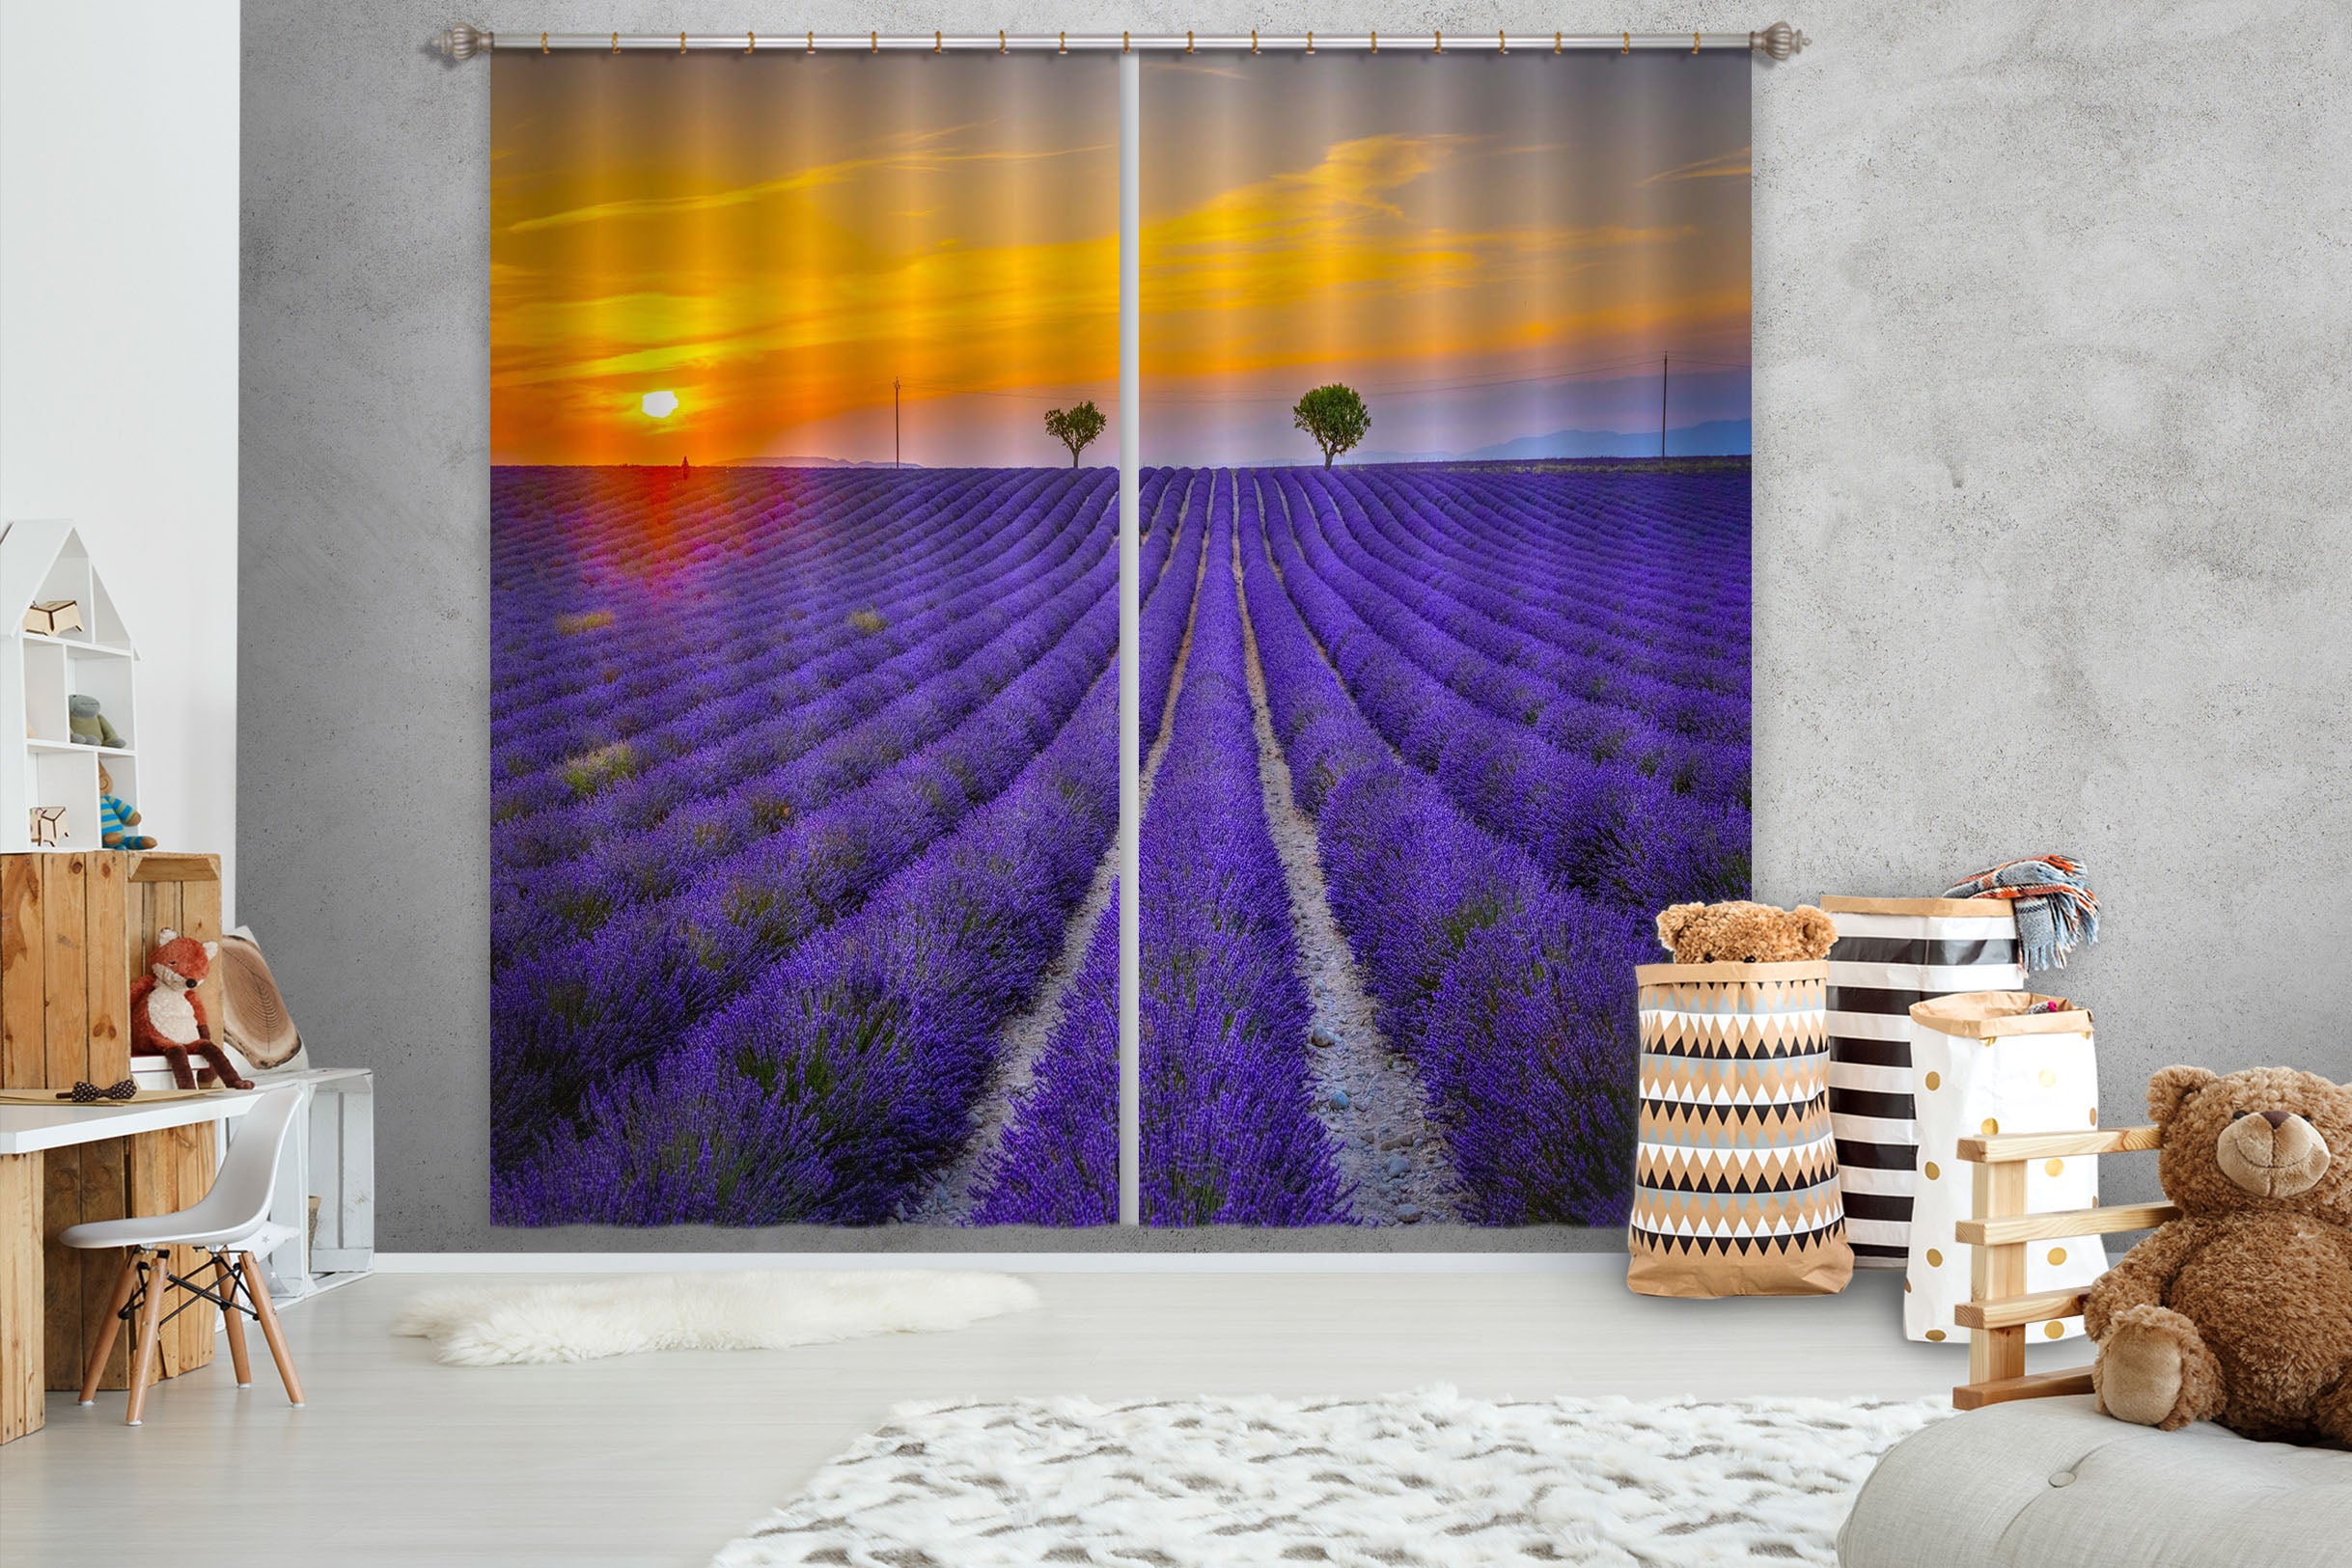 3D Purple Lavender 182 Marco Carmassi Curtain Curtains Drapes